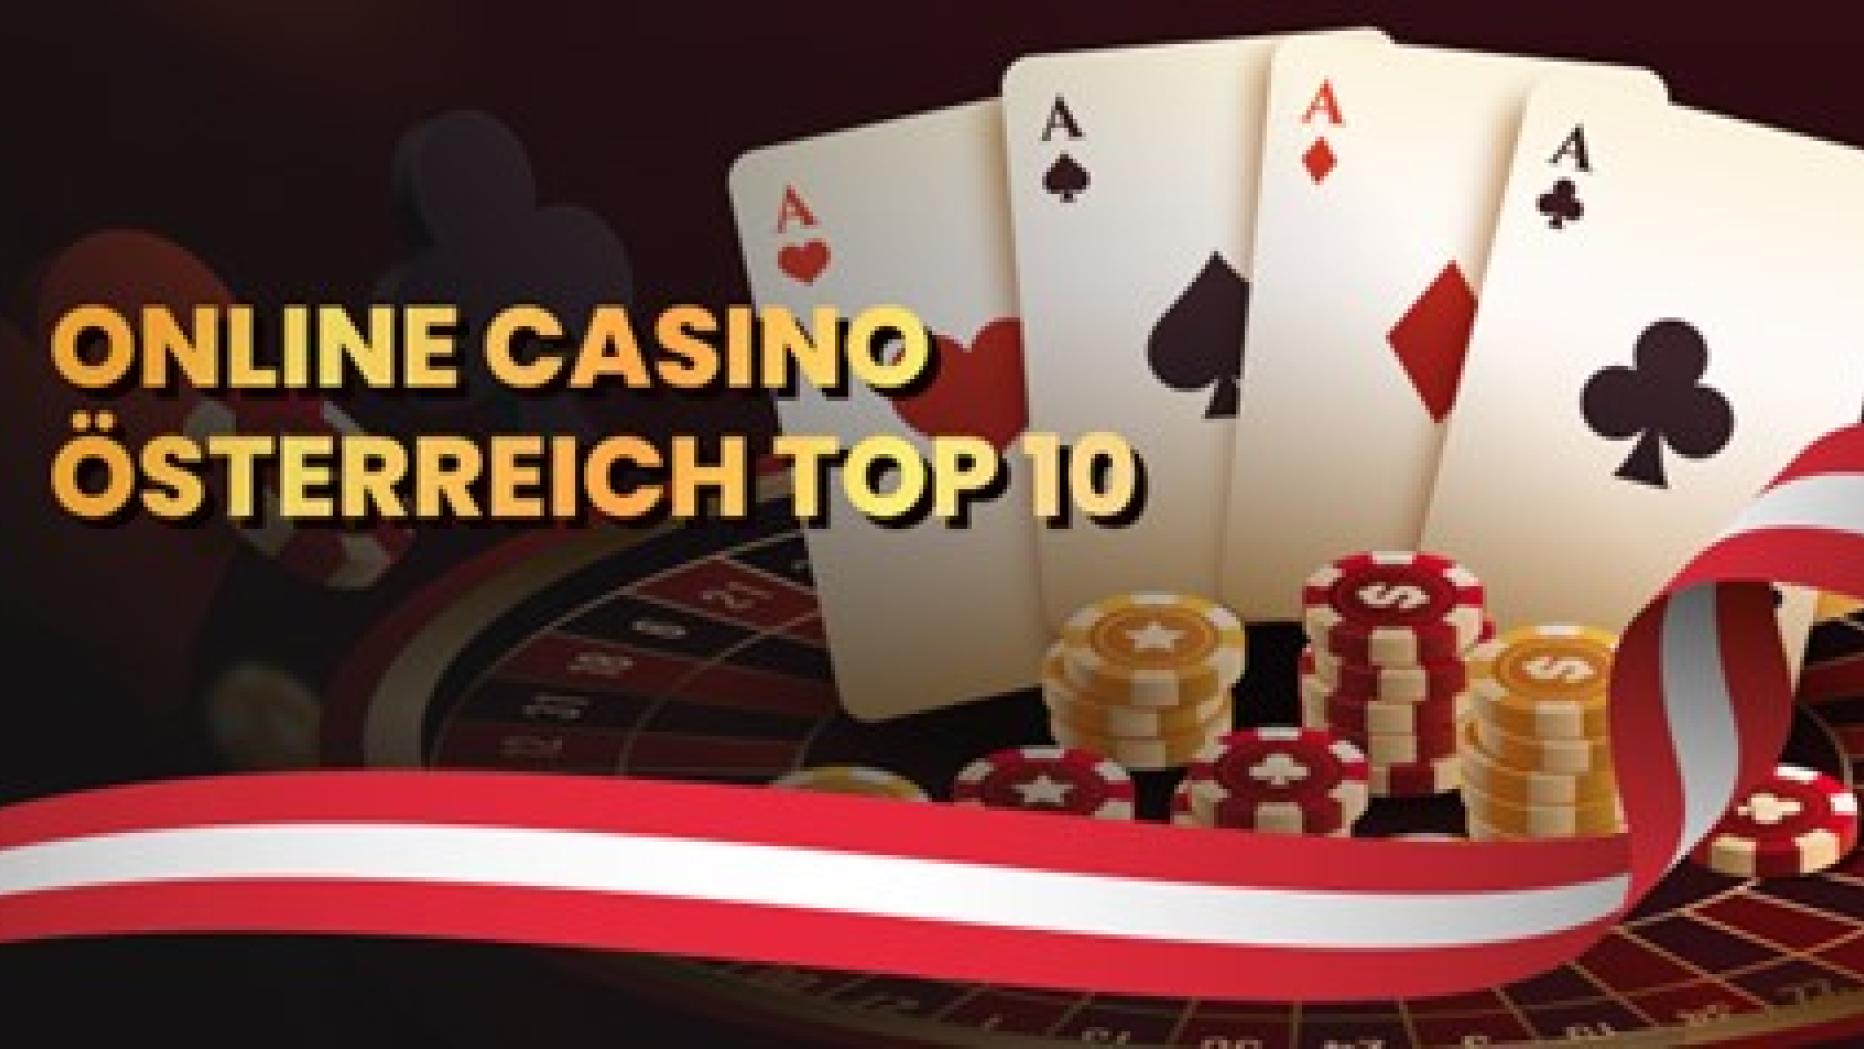 10 Tastenkombinationen für die besten Online Casinos, die Ihr Ergebnis in Rekordzeit erzielen